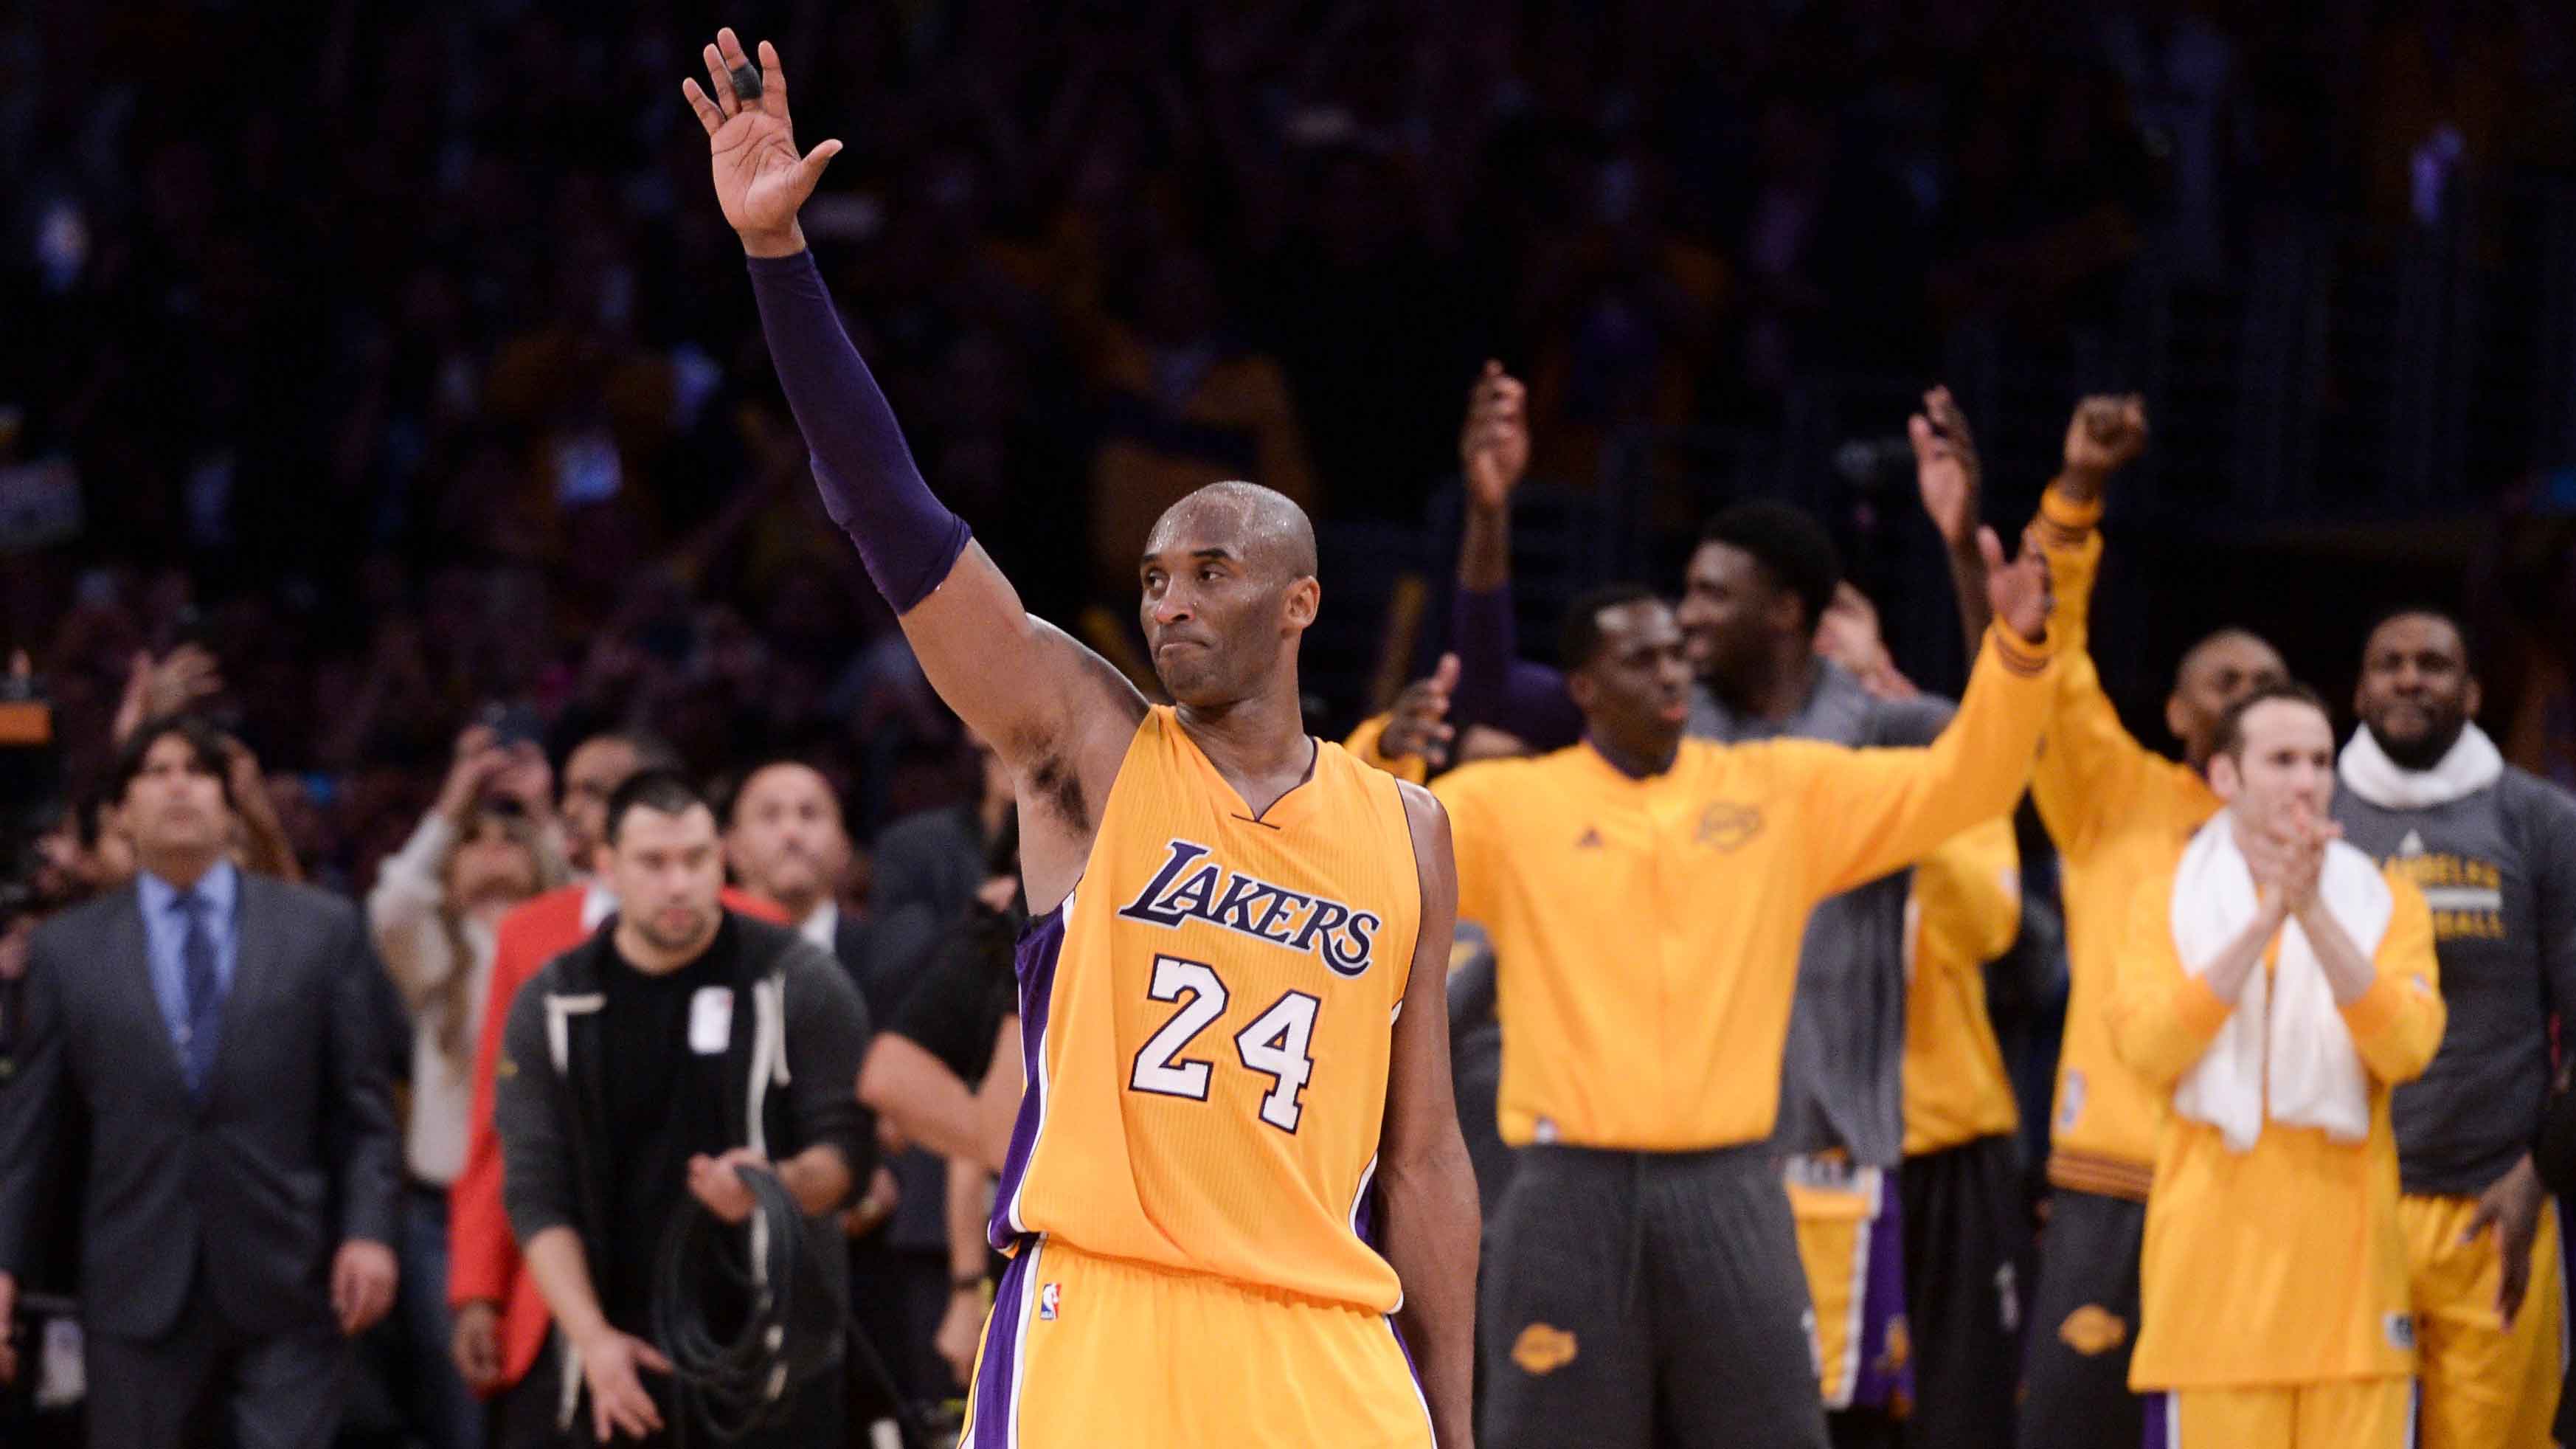 Kobe Bryant has left an everlasting impact on the world – Eastside